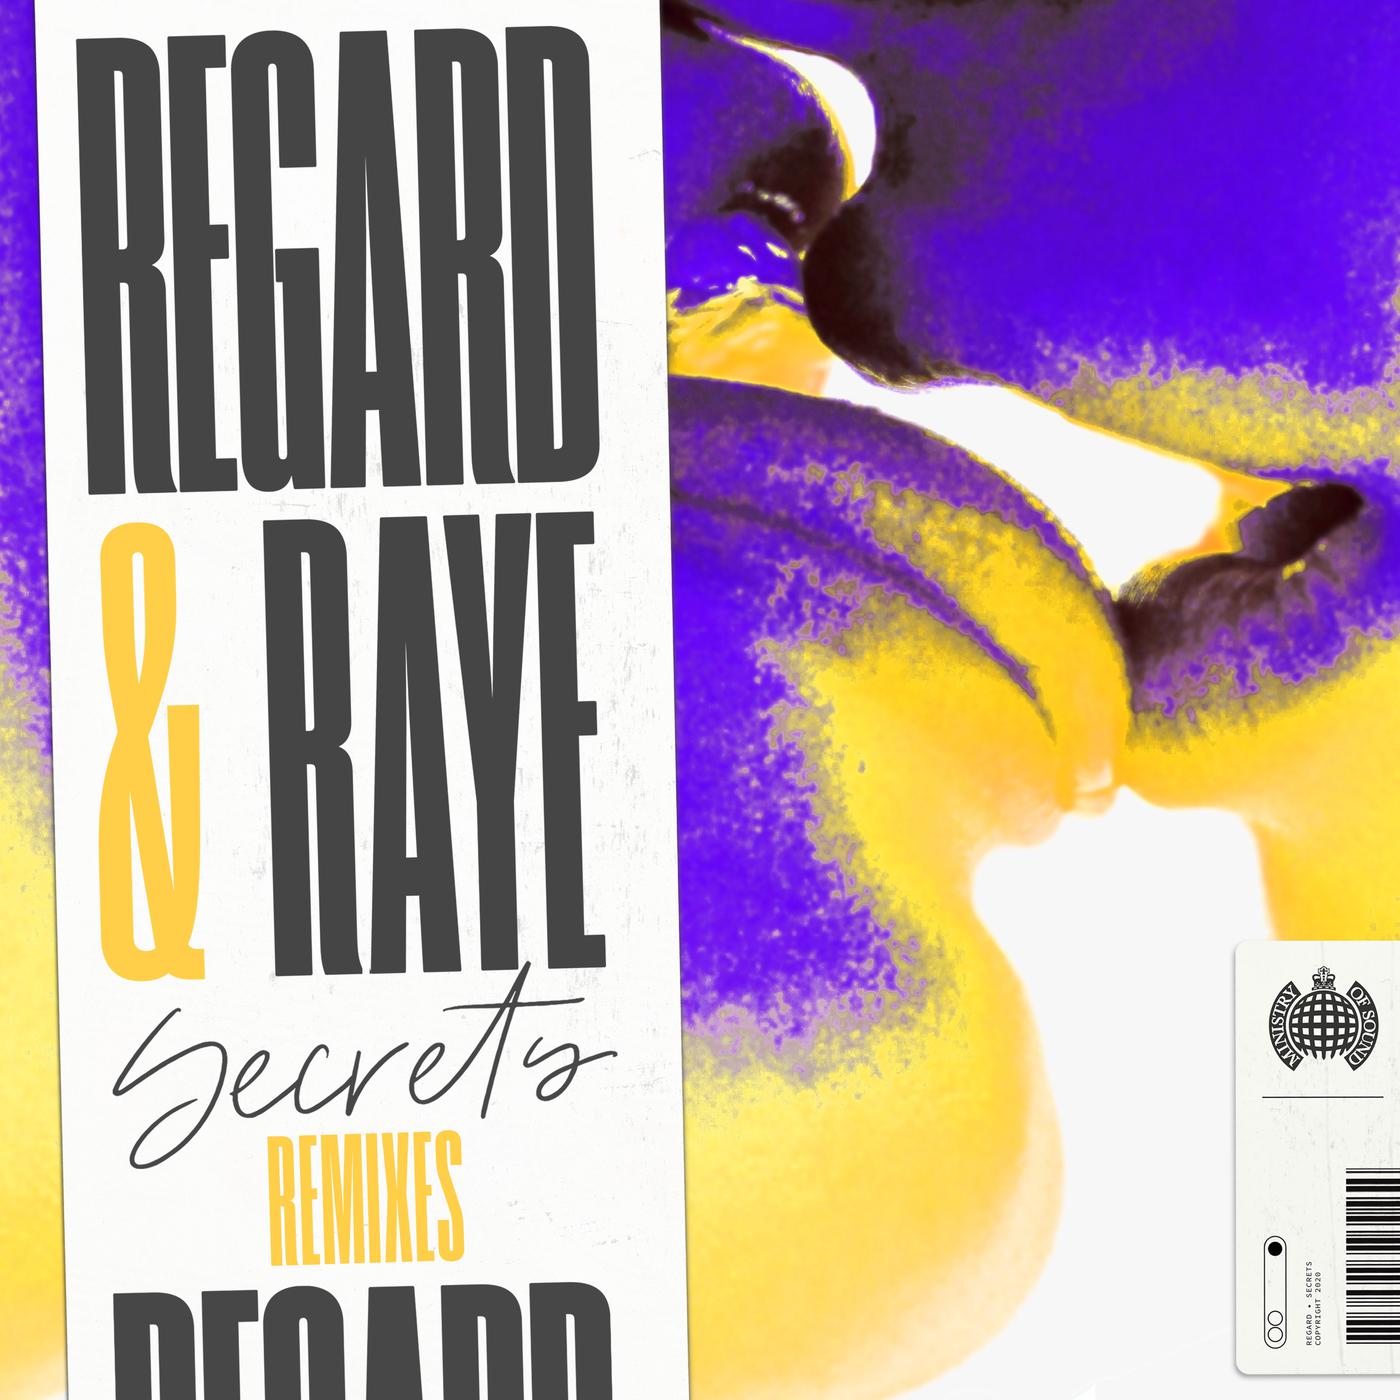 Regard - Secrets (Tom Field Remix)